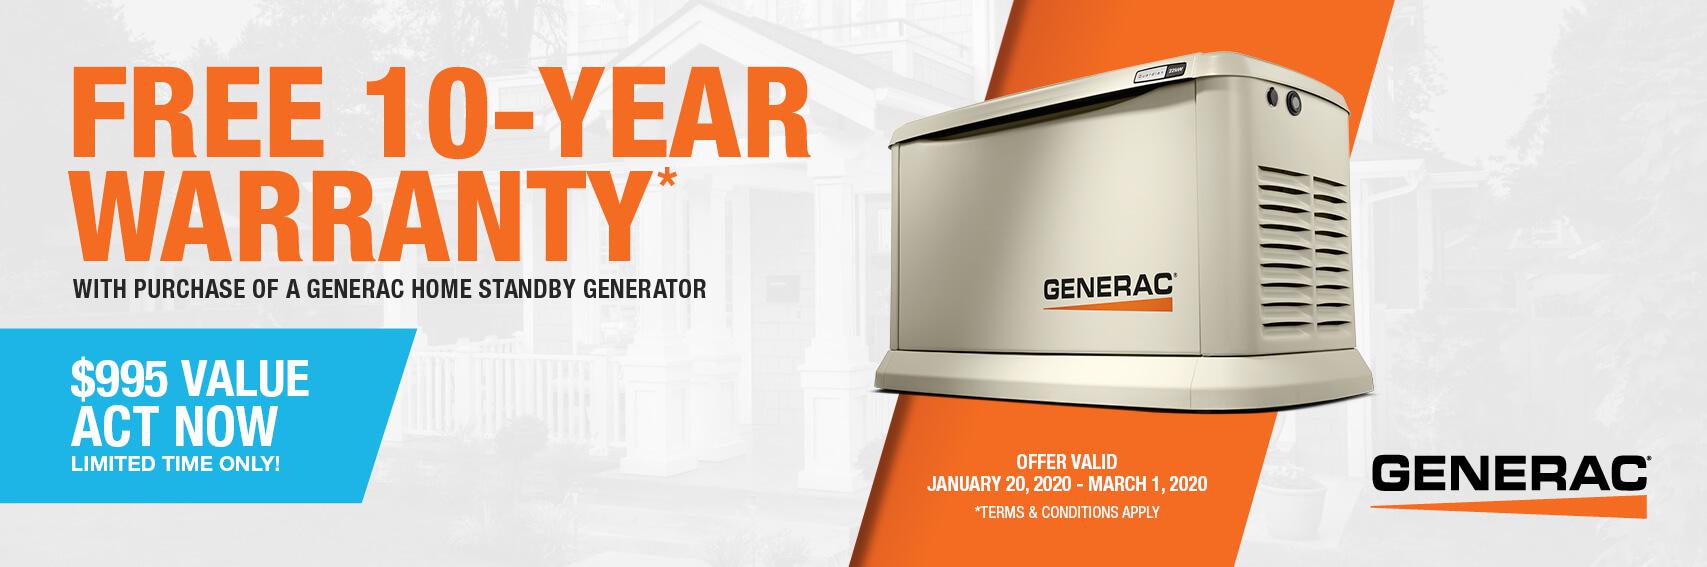 Homestandby Generator Deal | Warranty Offer | Generac Dealer | Pine, CO